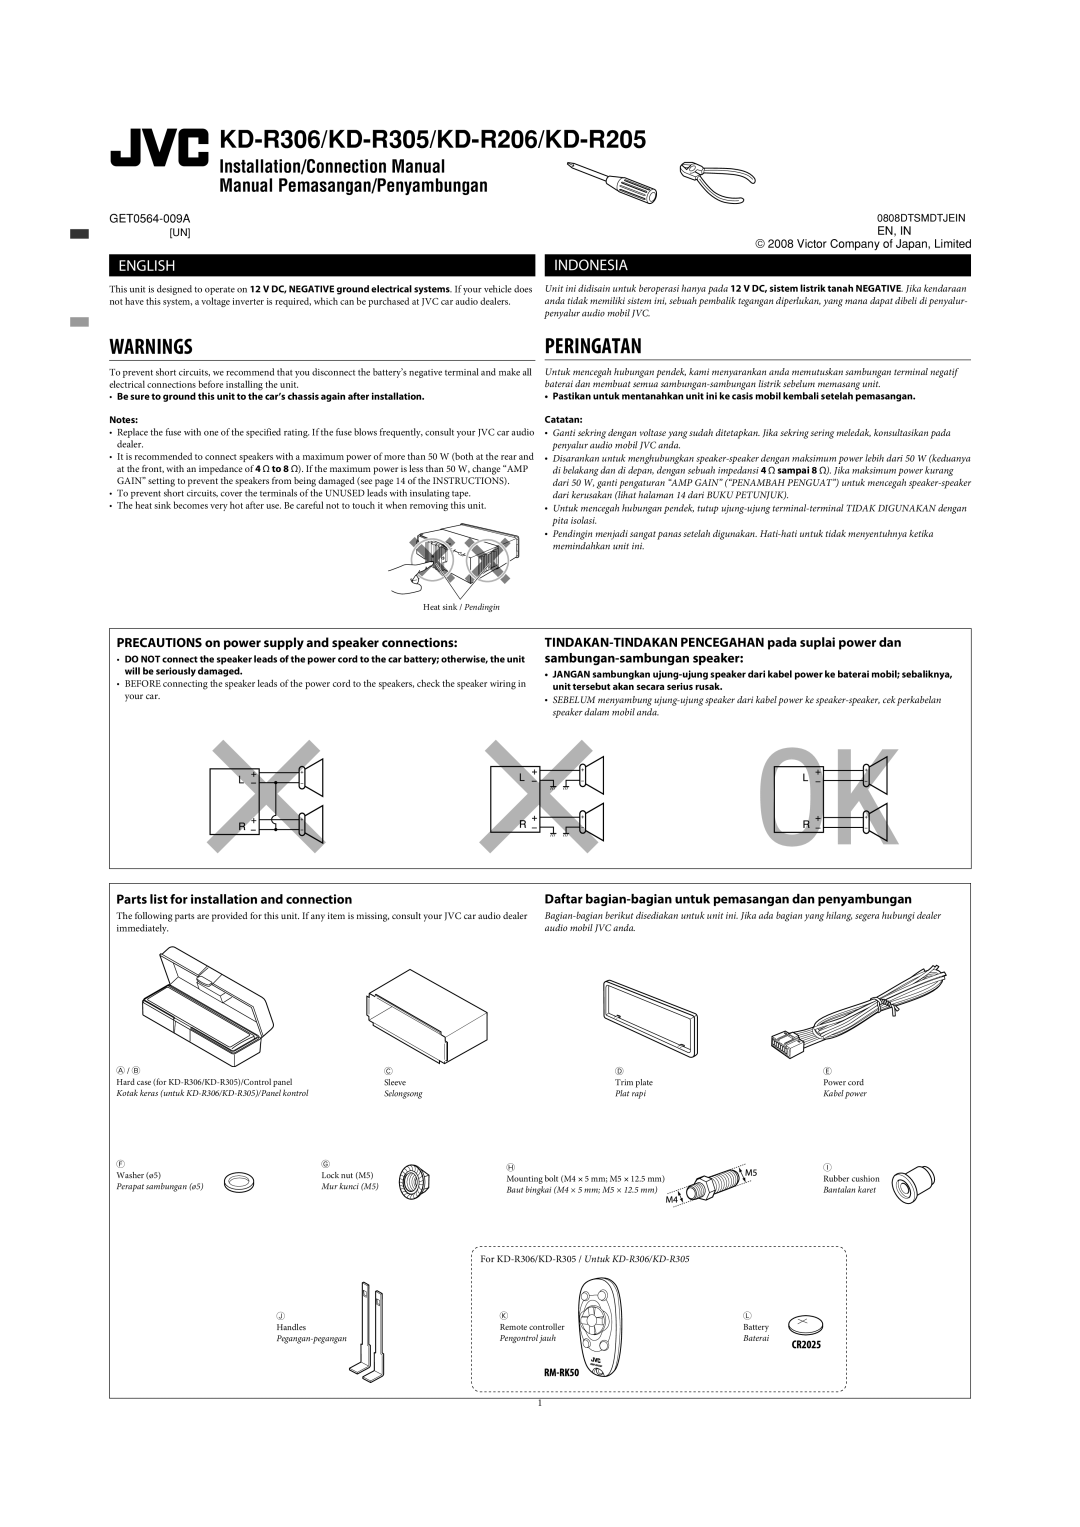 JVC KD-R301 Peringatan, Manual Pemasangan/Penyambungan, Indonesia, Daftar bagian-bagian untuk pemasangan dan penyambungan 